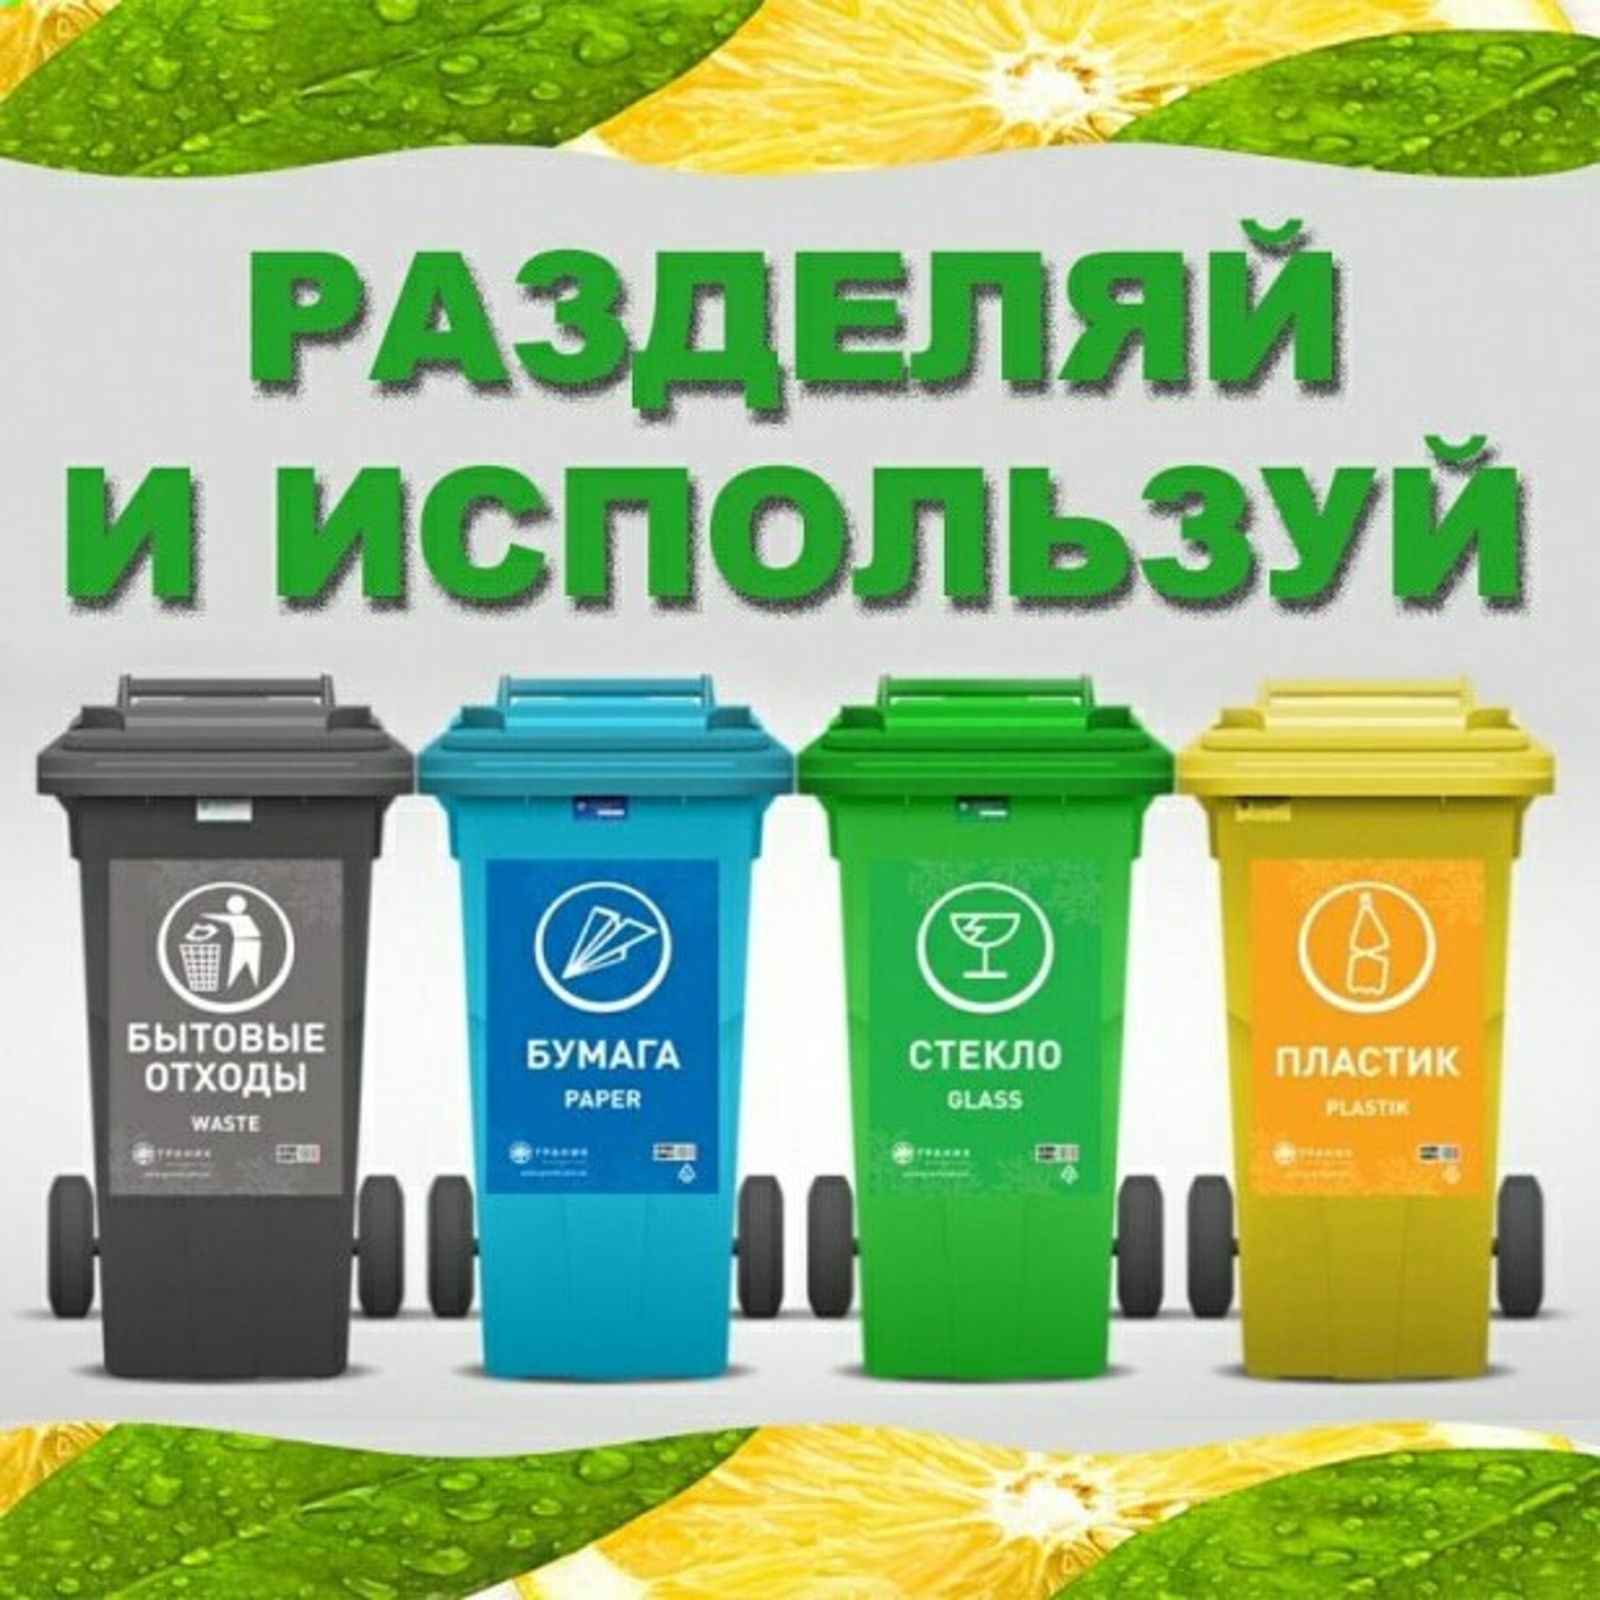 Контейнеры для раздельного сбора мусора: цвета и обозначения для правильного разделения и сортировки отходов, для чего нужны серый, синий и сетчатый баки?